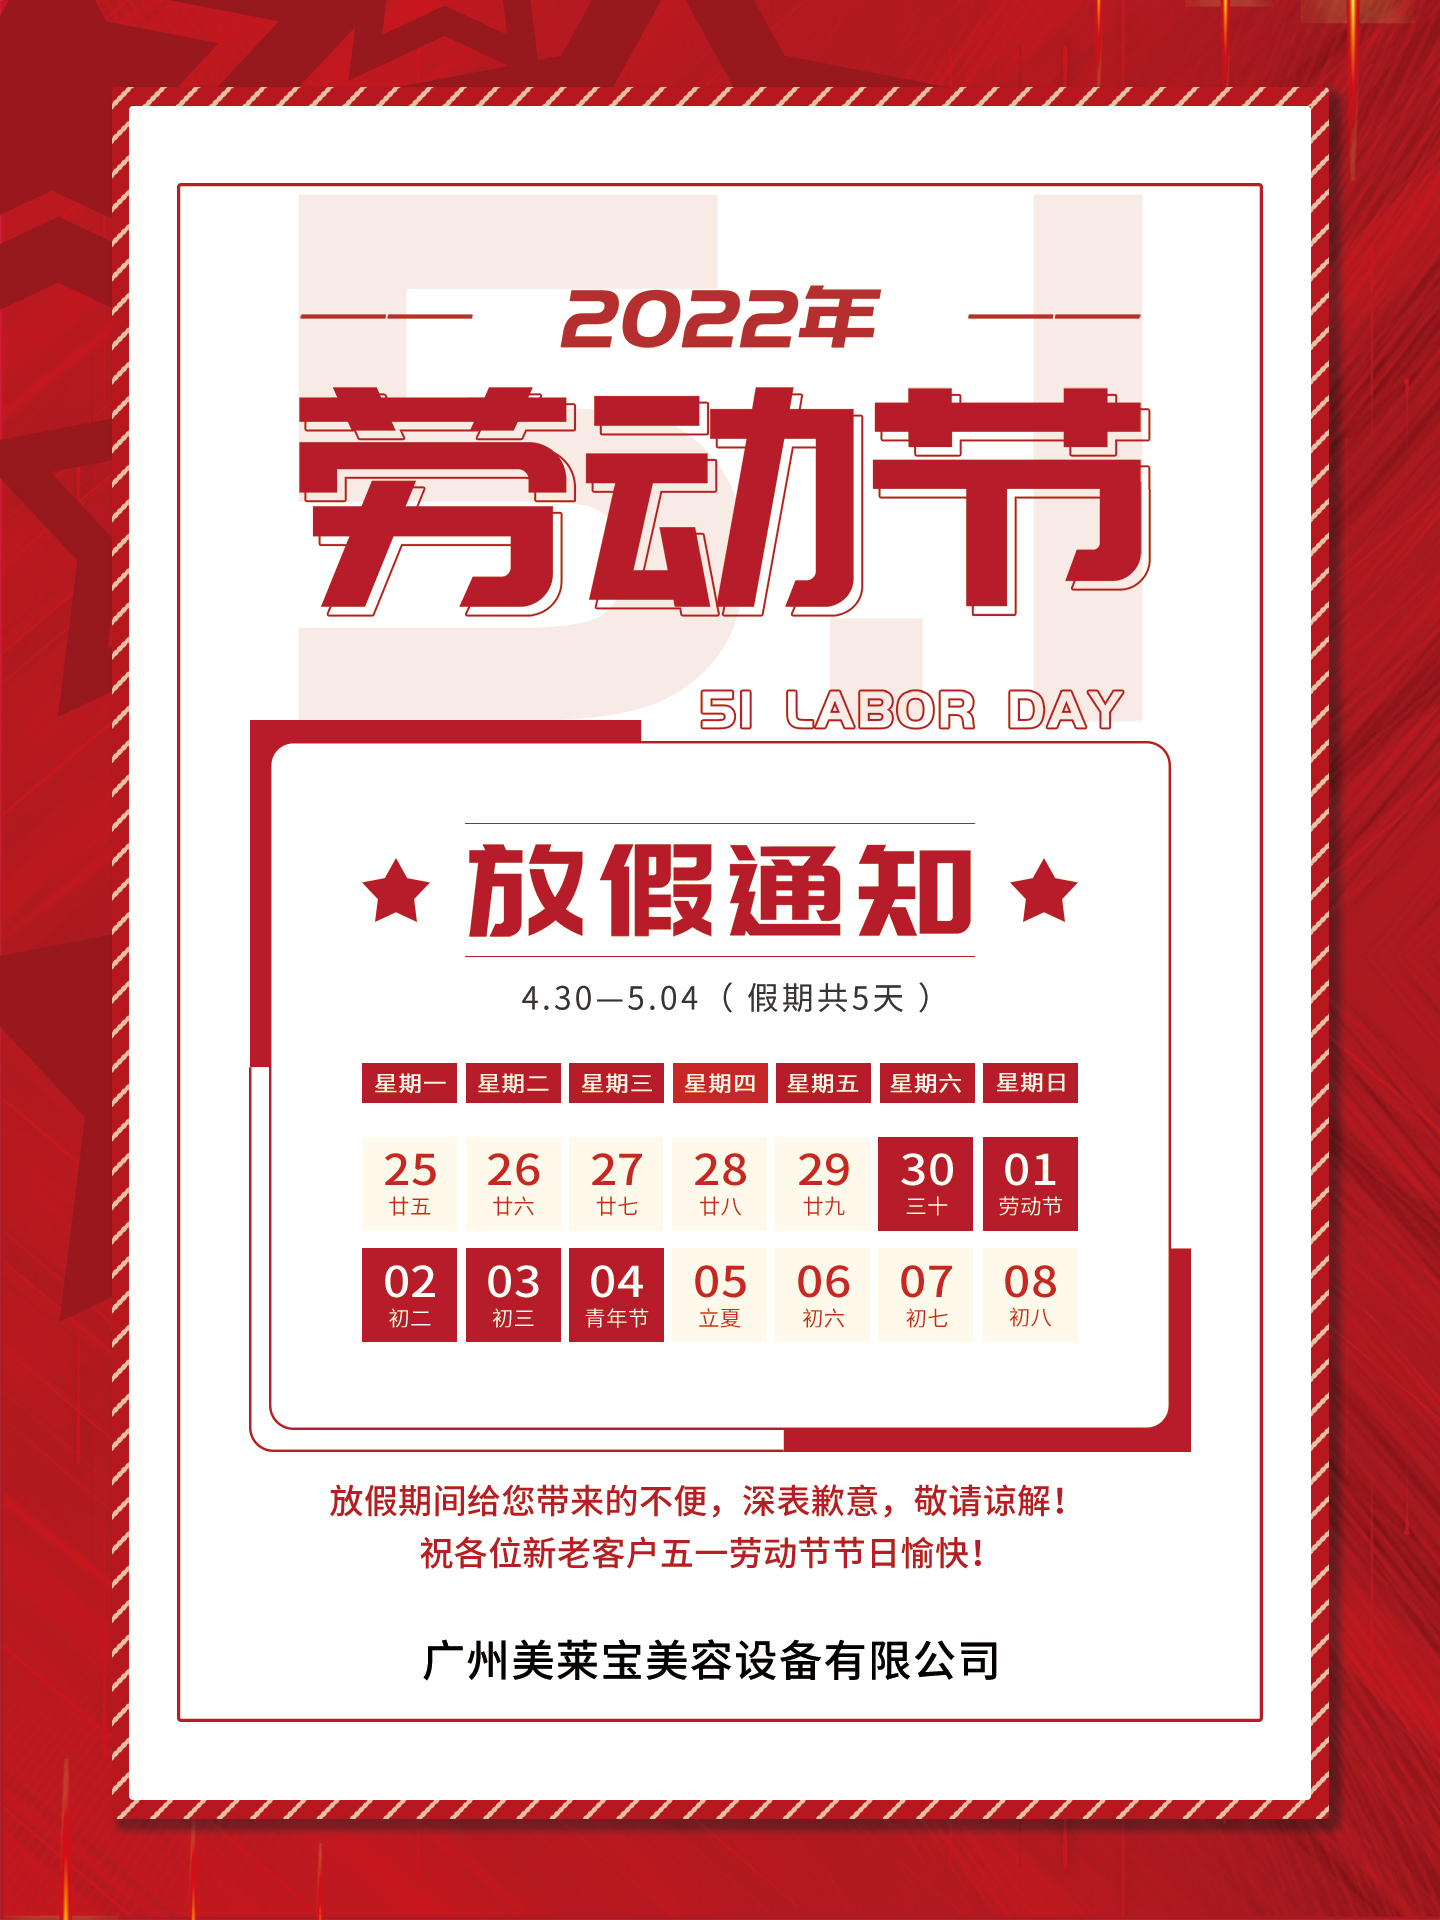 关于广州美莱宝美容设备有限公司2022年劳动节放假通知